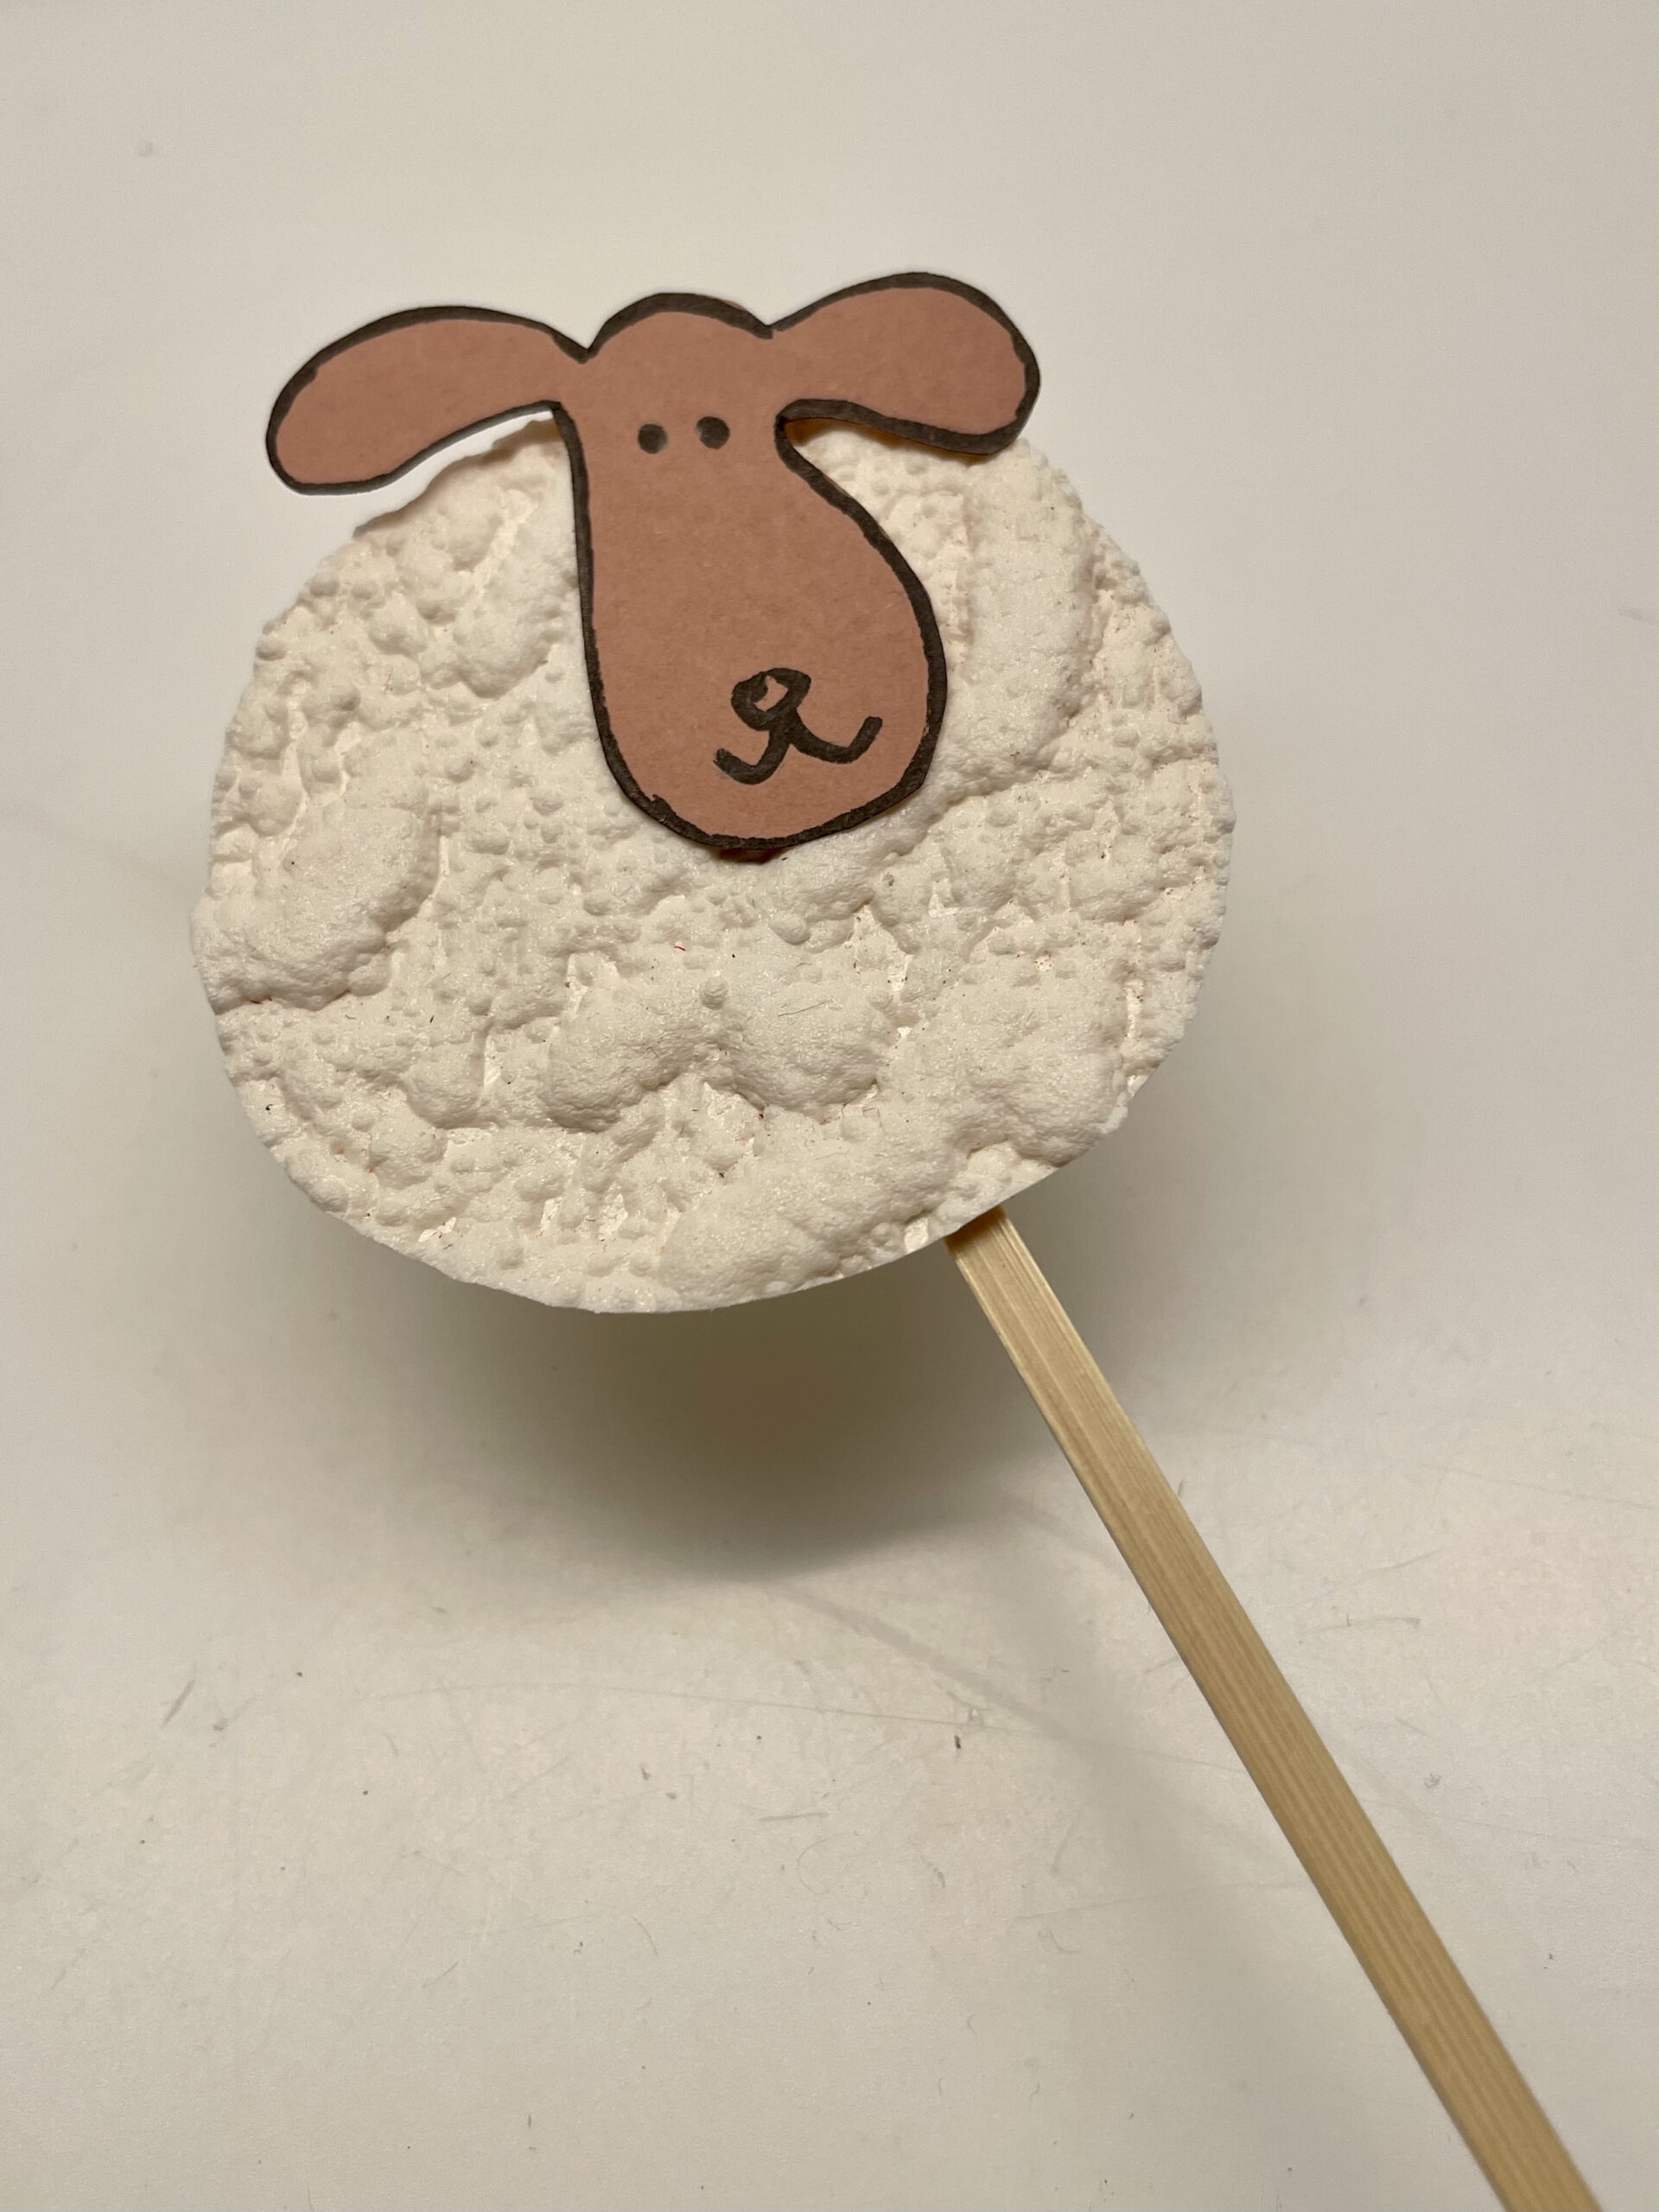 Bild zum Schritt 15 für das Bastel- und DIY-Abenteuer für Kinder: 'Nun könnt ihr das Schaf als Dekoration verwenden und zum...'